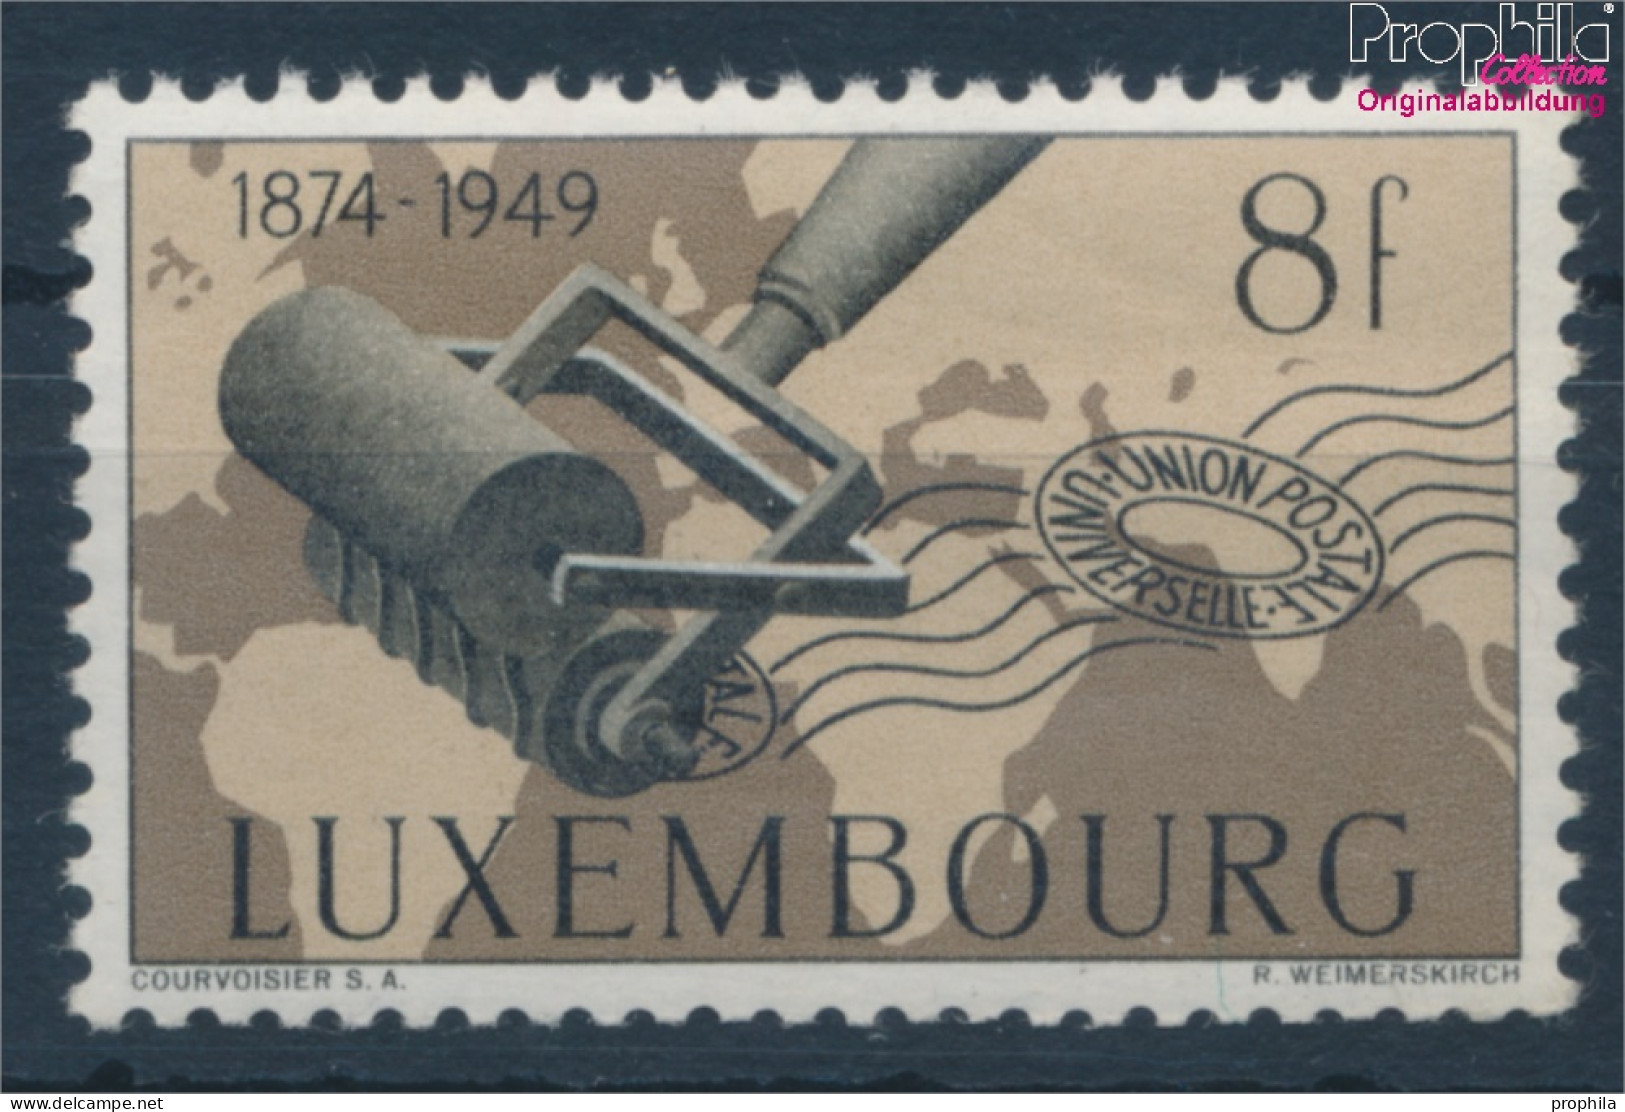 Luxemburg 463 Postfrisch 1949 75 Jahre UPU (10363182 - Unused Stamps